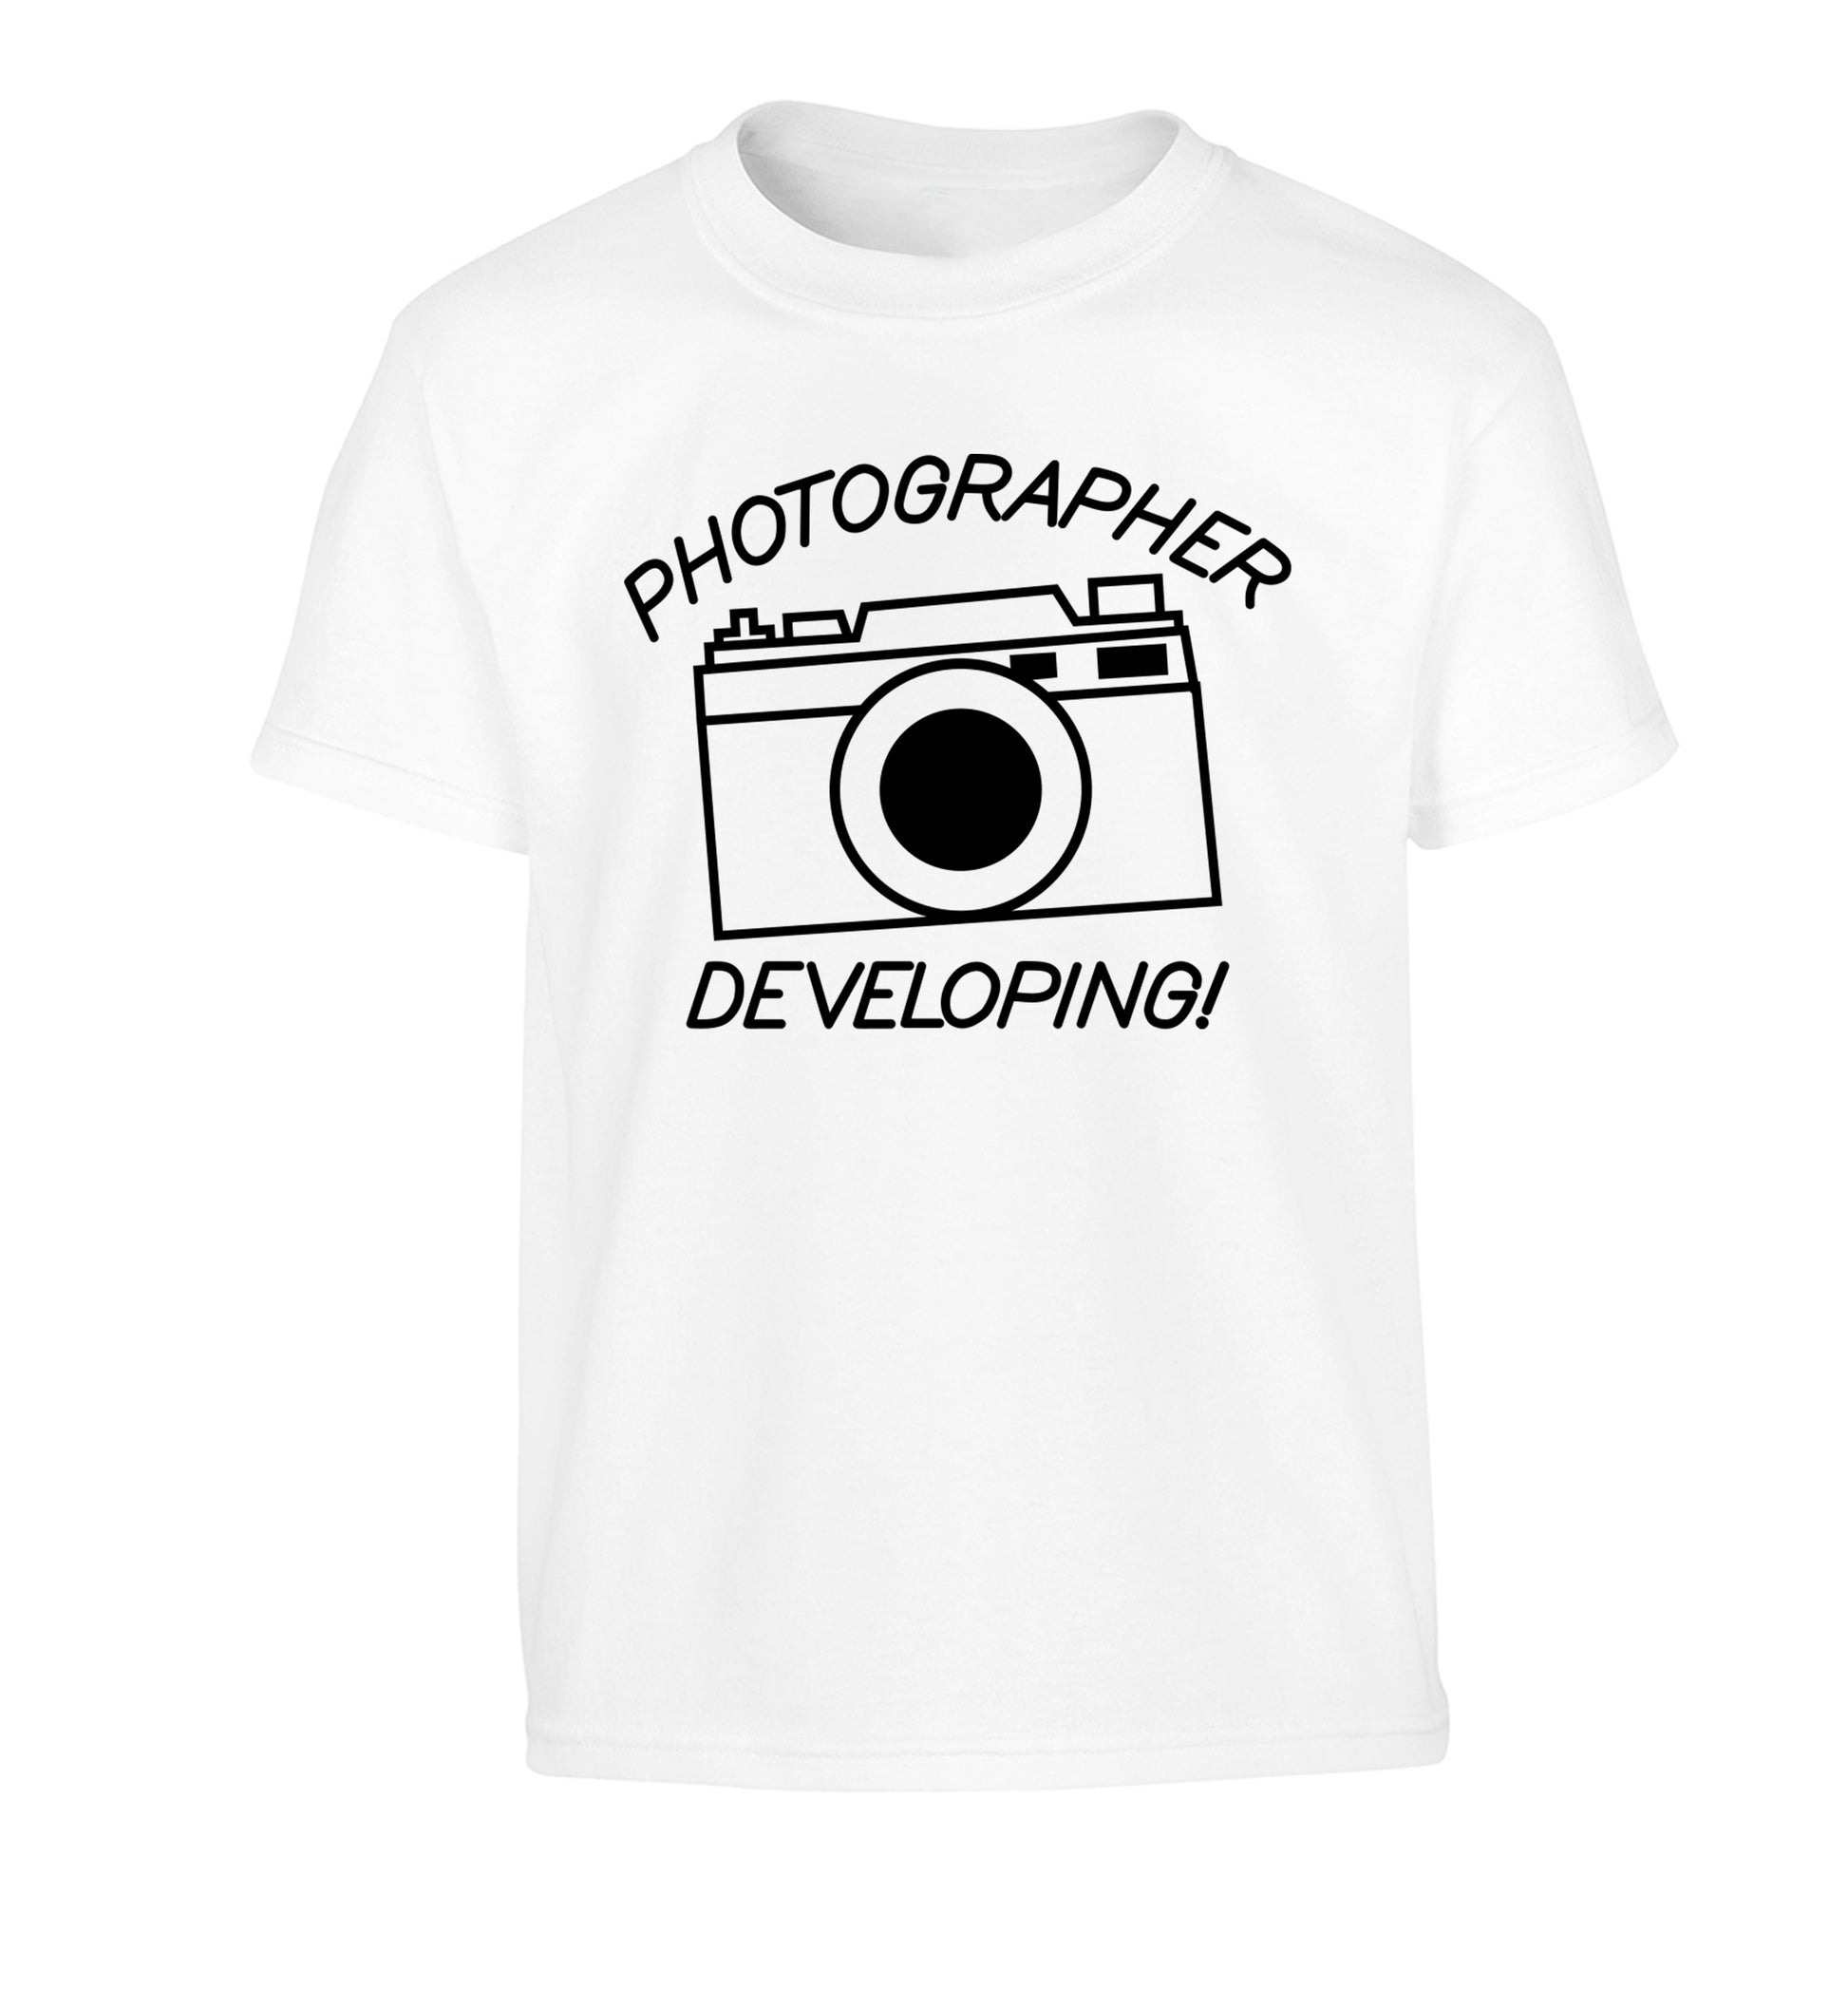 Photographer Developing  Children's white Tshirt 12-13 Years